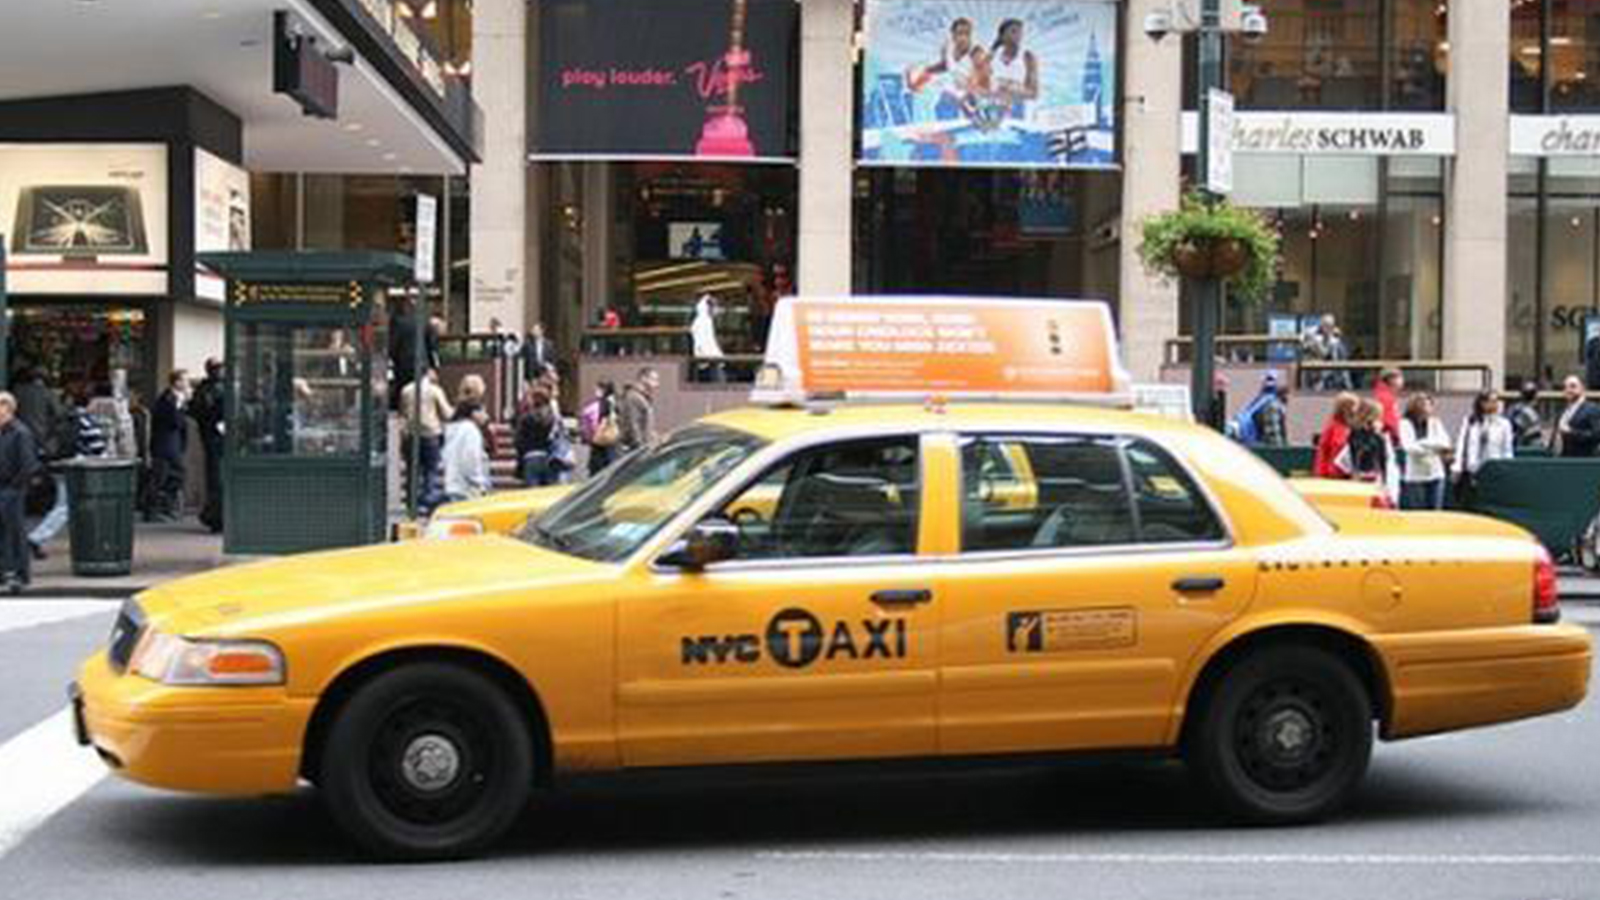 Иви такси. Нью Йорк такси Юбер. Такси Нью-Йорка. Нью Йоркское такси. Такси американская версия.